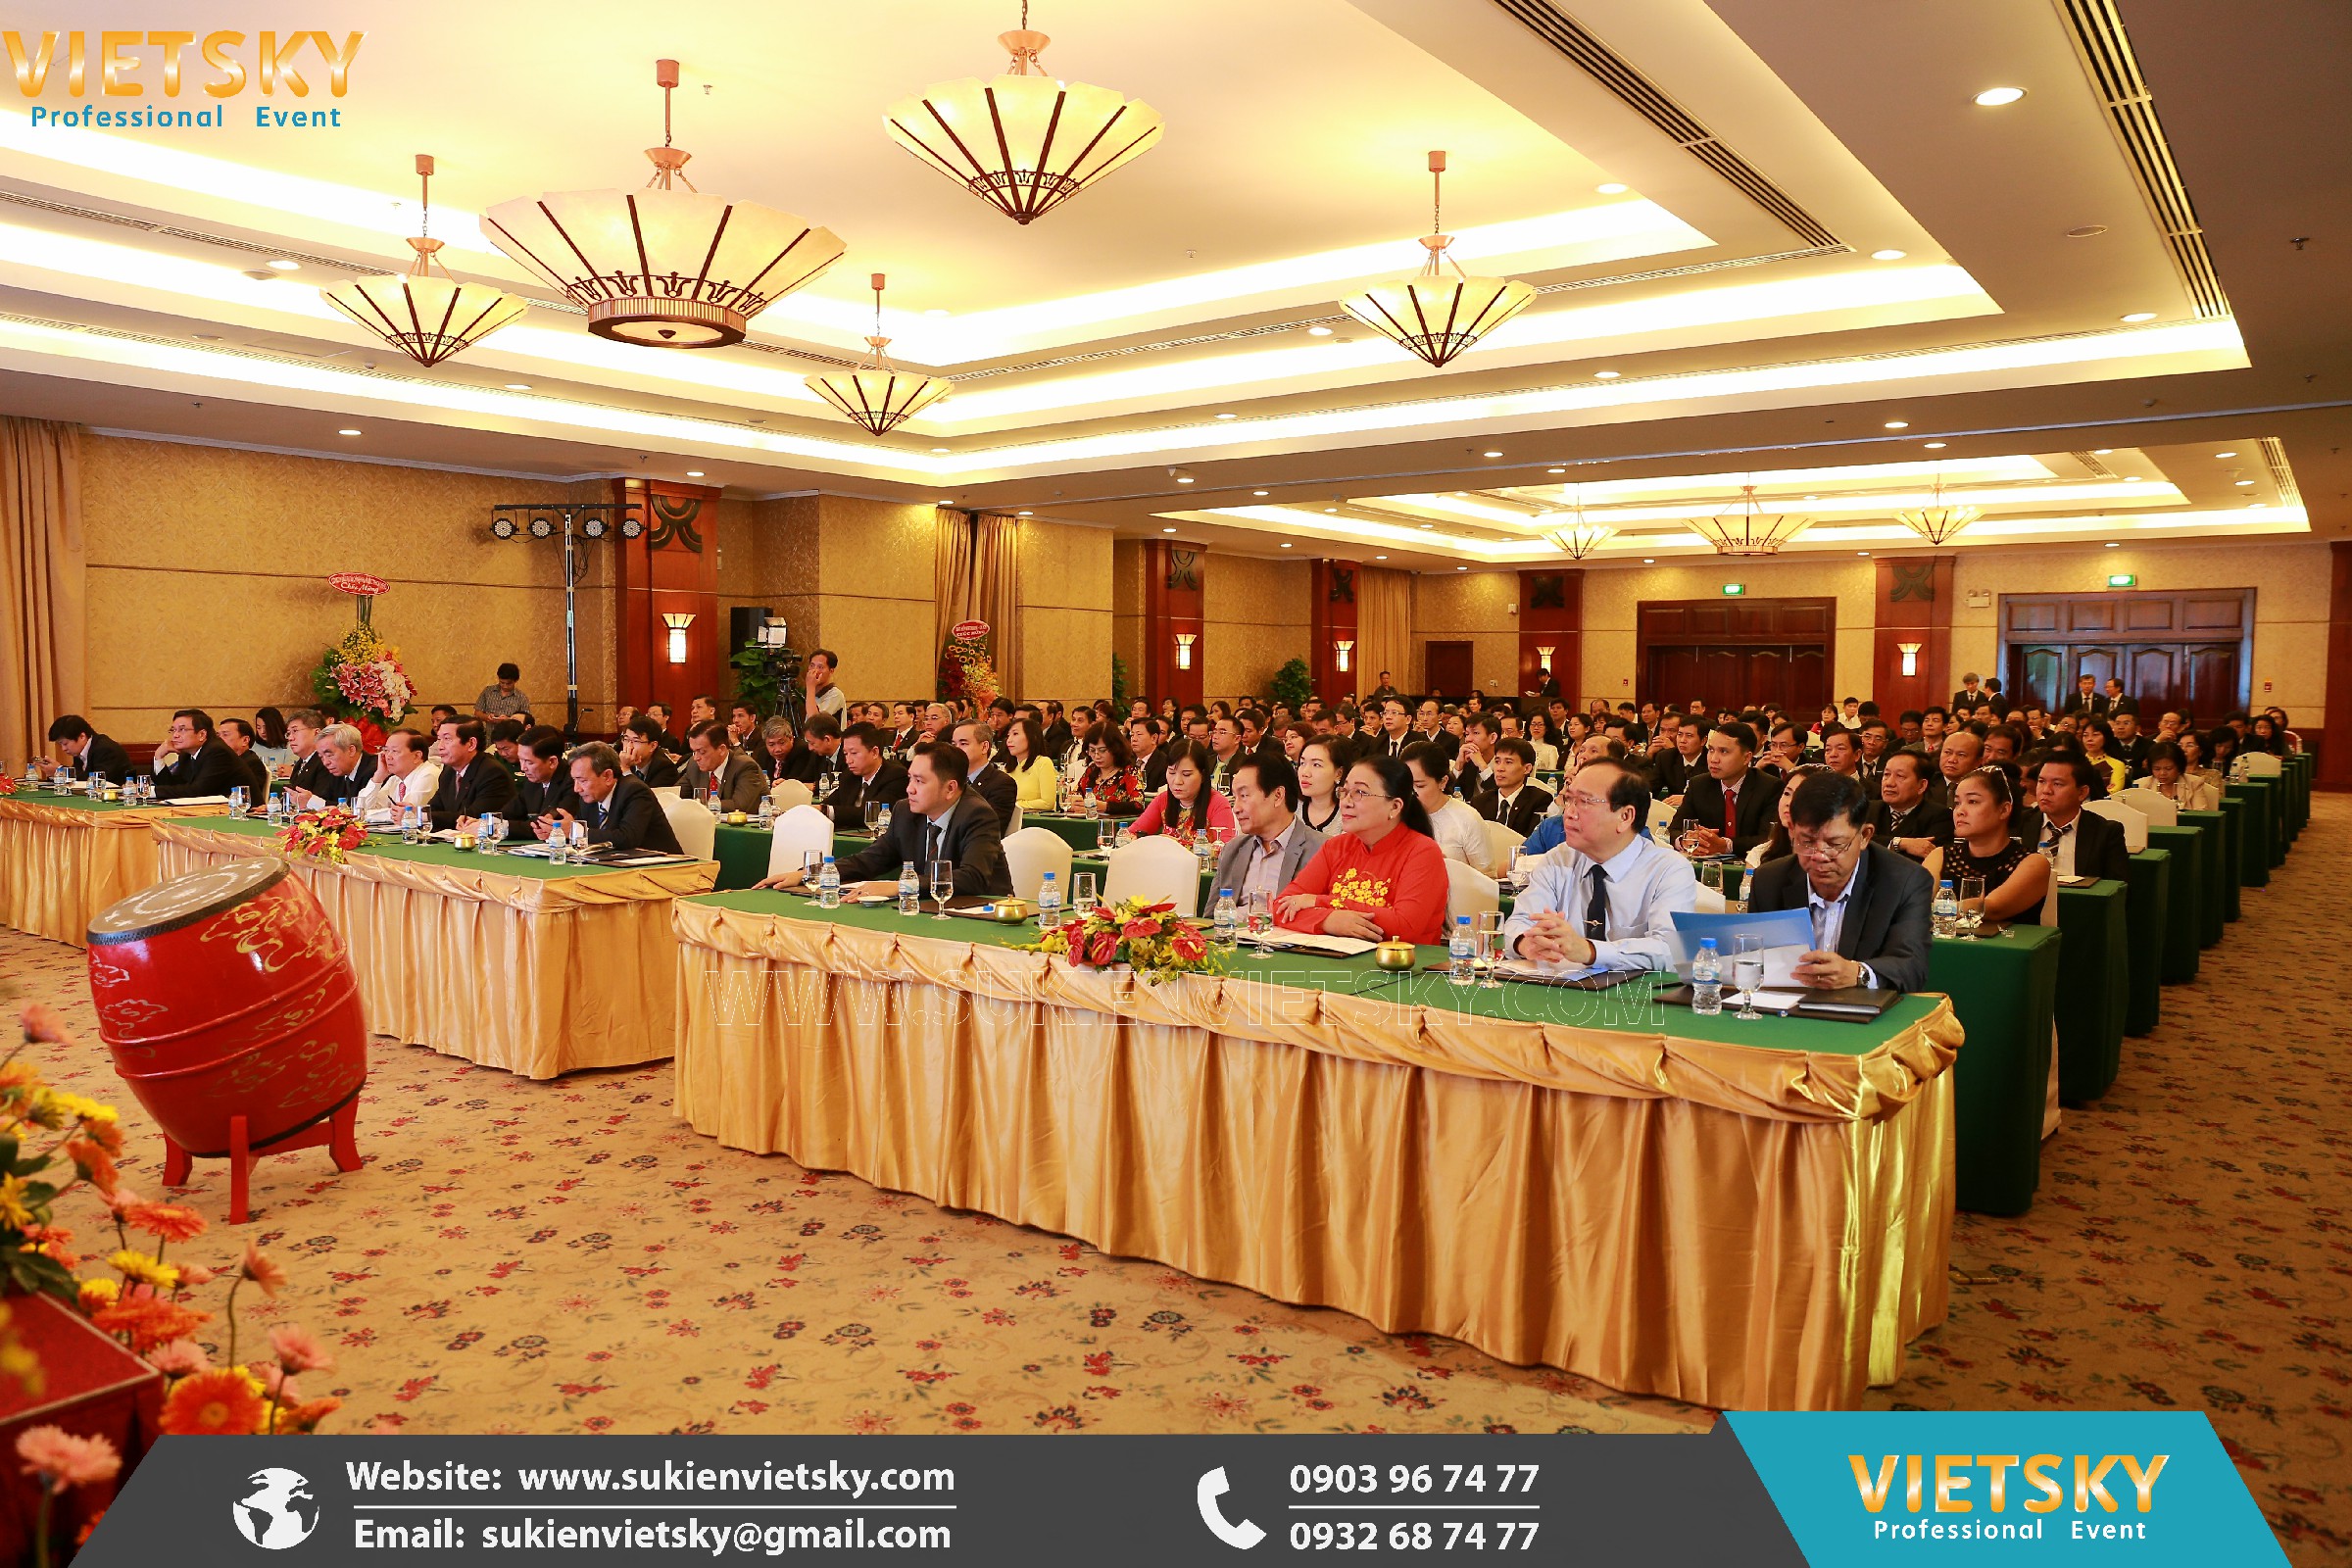 Hội nghị | Công ty tổ chức hội nghị, hội thảo chuyên nghiệp tại Yên Bái